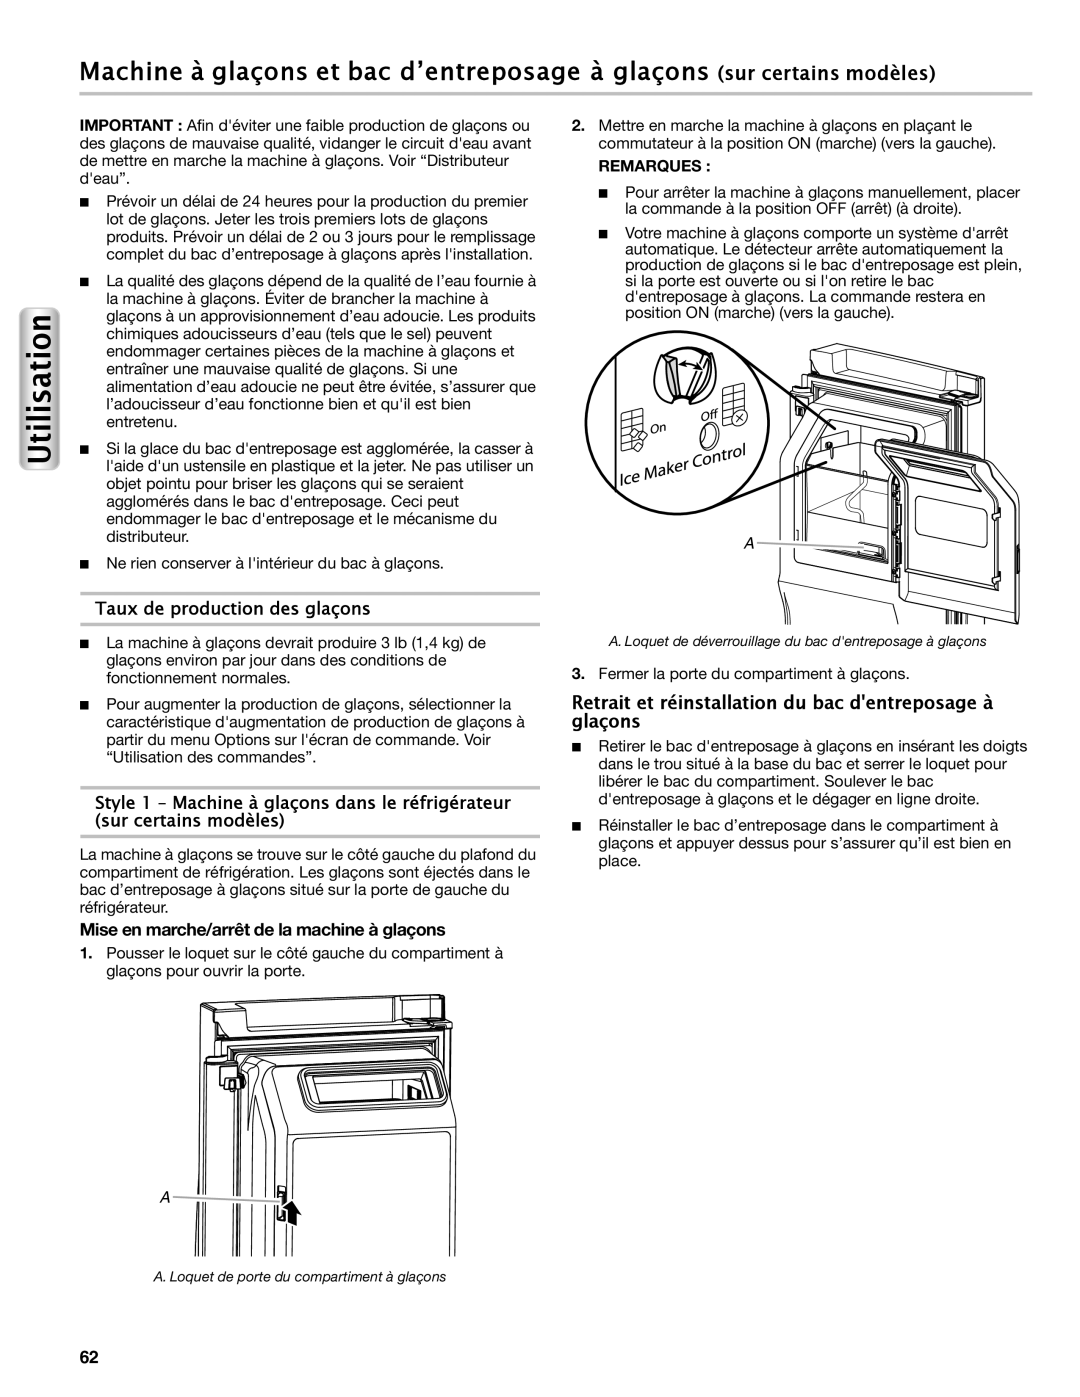 Maytag W10558103A manual Retrait et réinstallation du bac dentreposage à glaçons, Taux de production des glaçons 